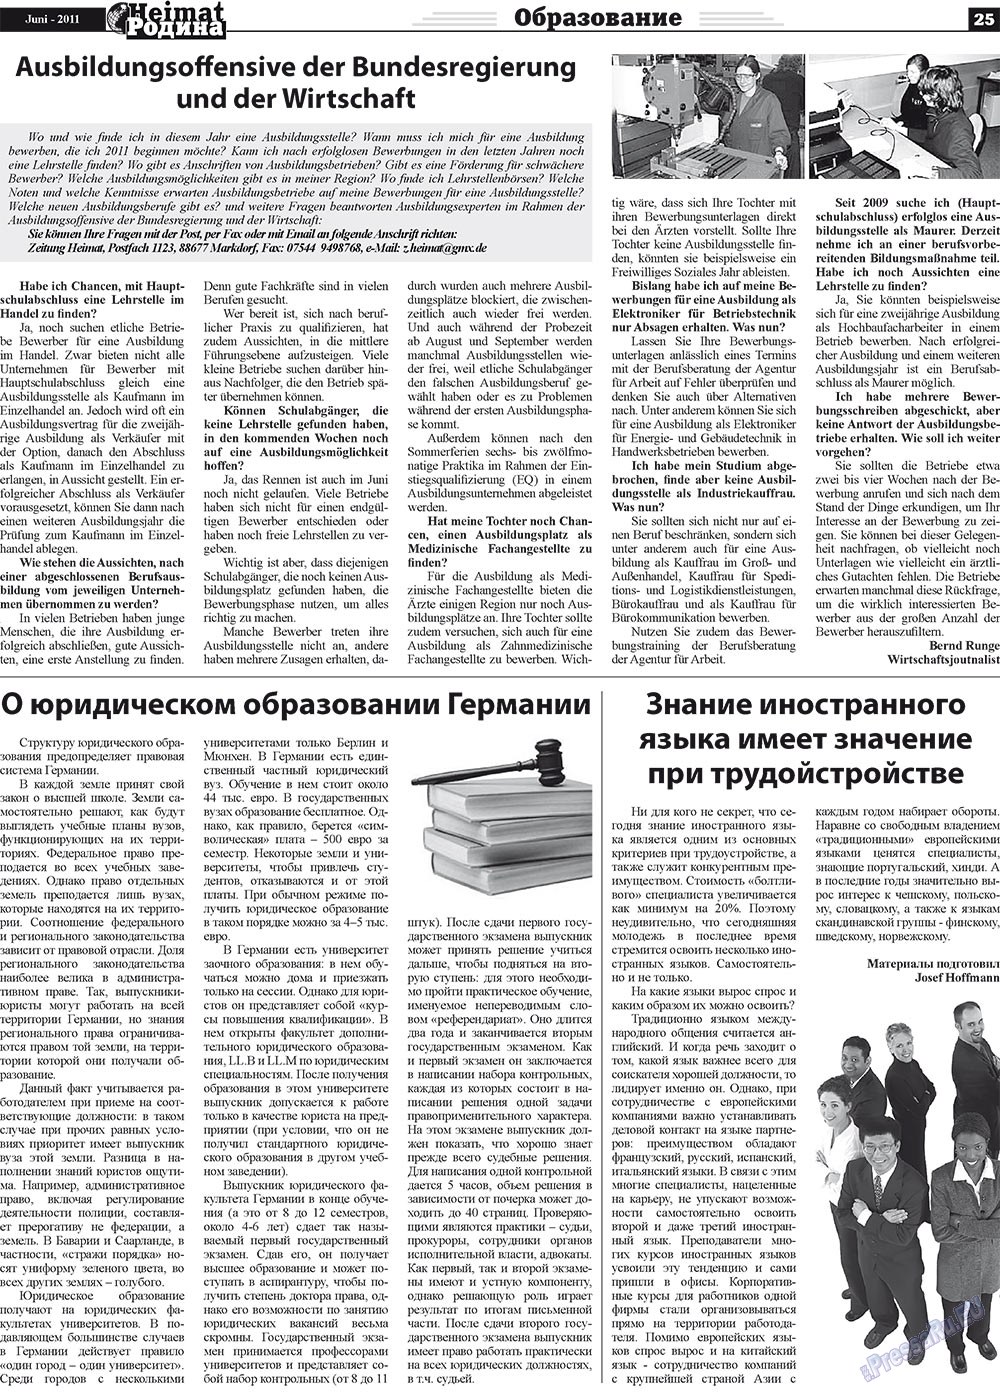 Heimat-Родина (газета). 2011 год, номер 6, стр. 25